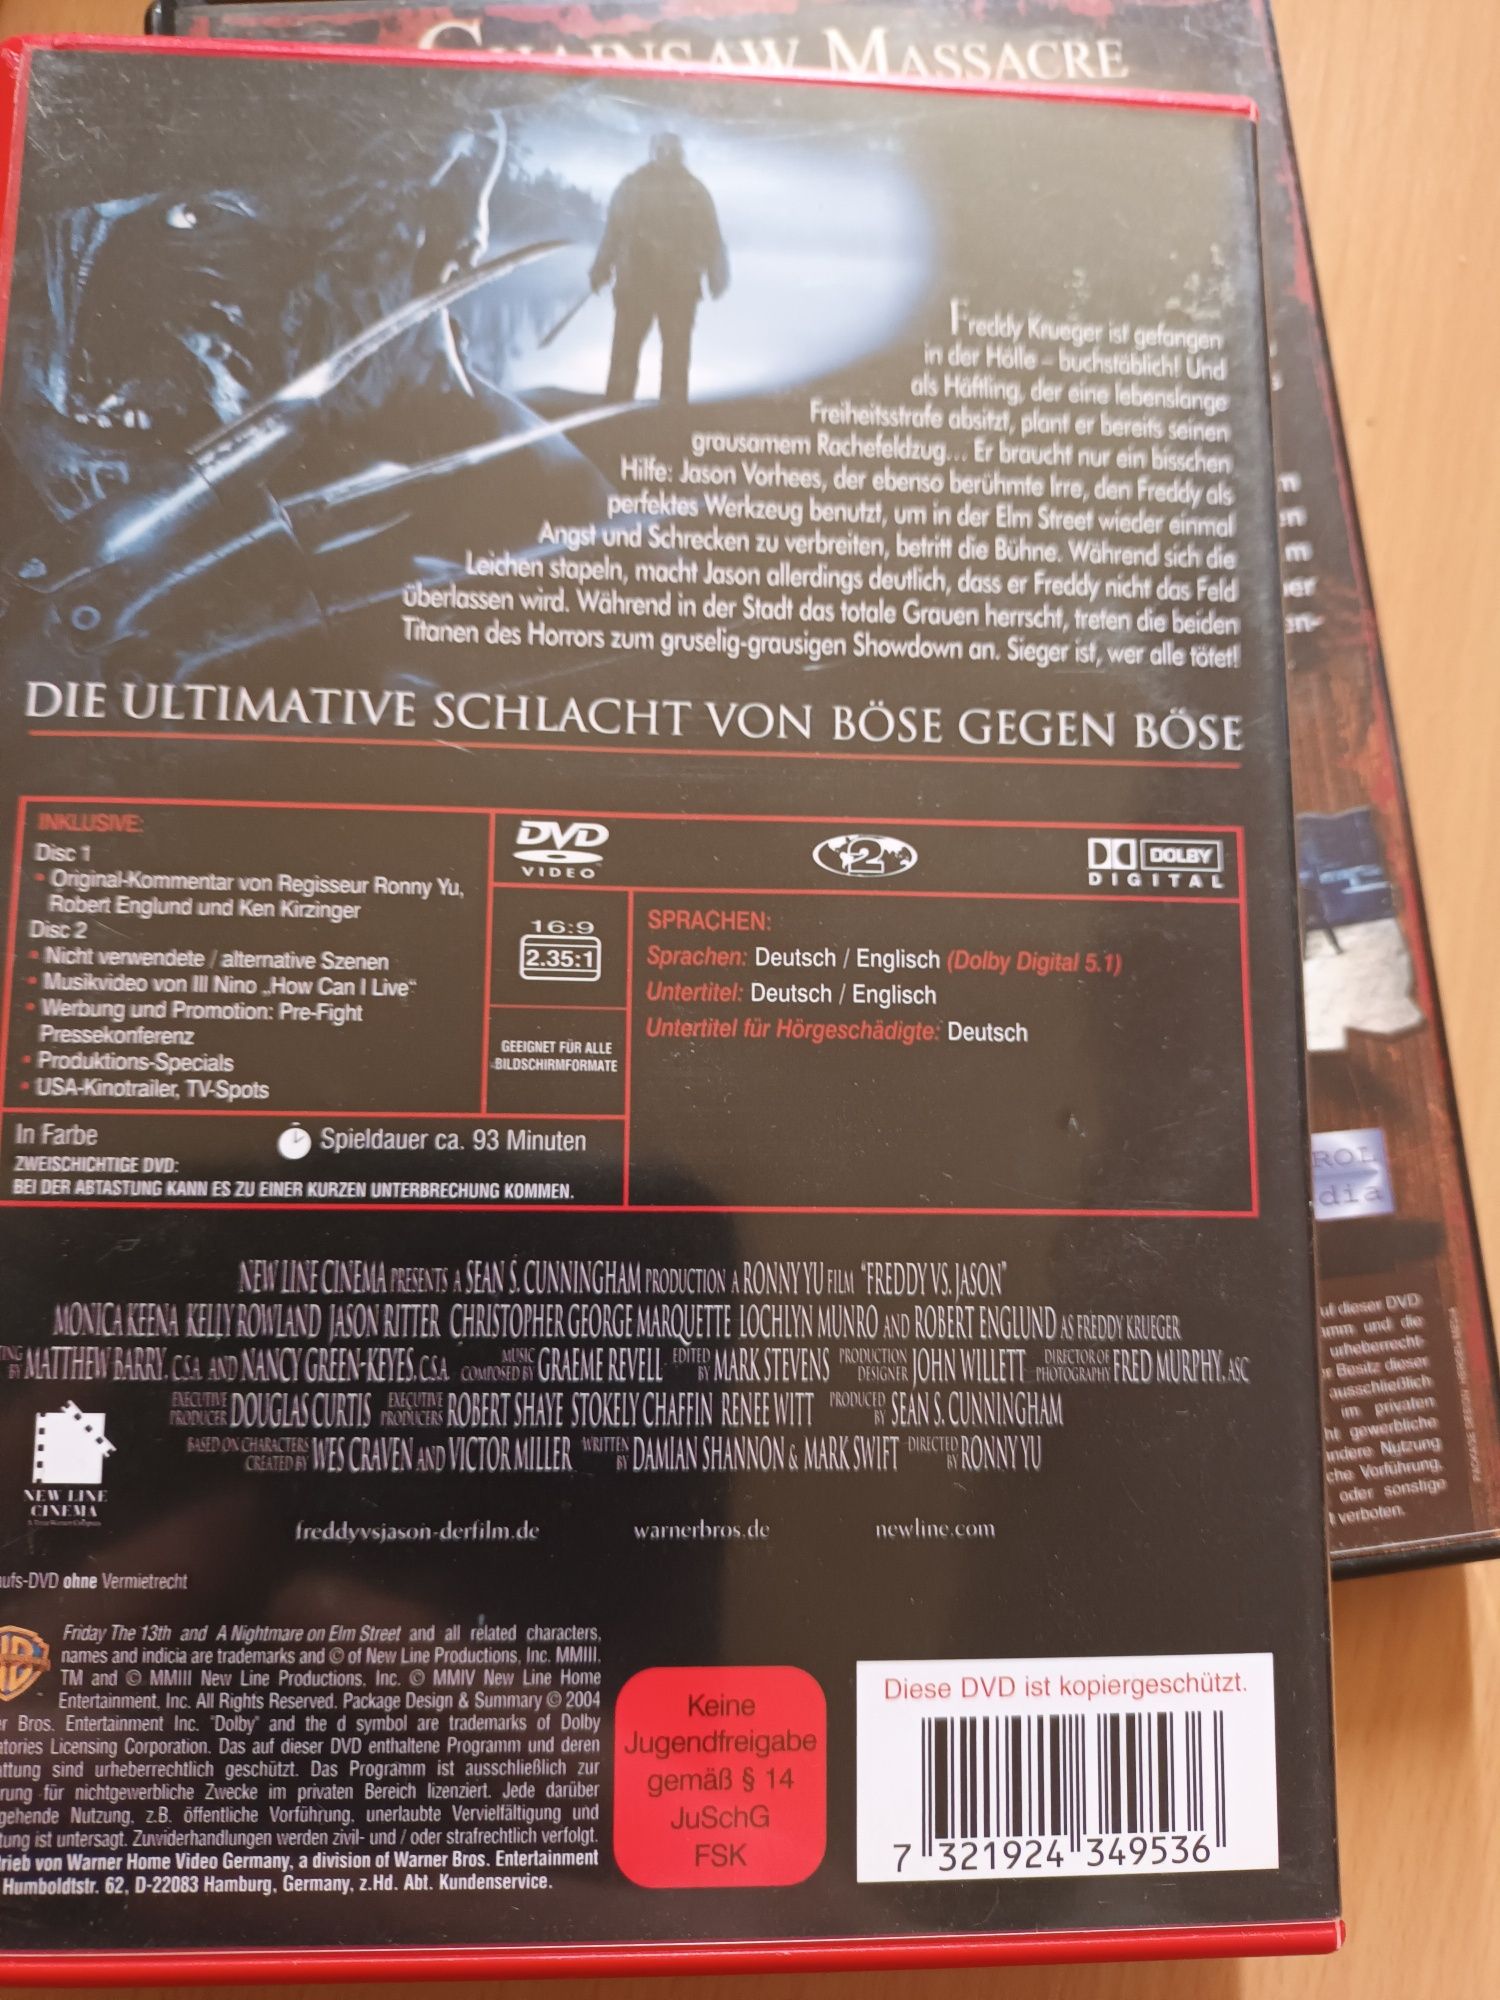 Płyty DVD filmy w j.niemieckim